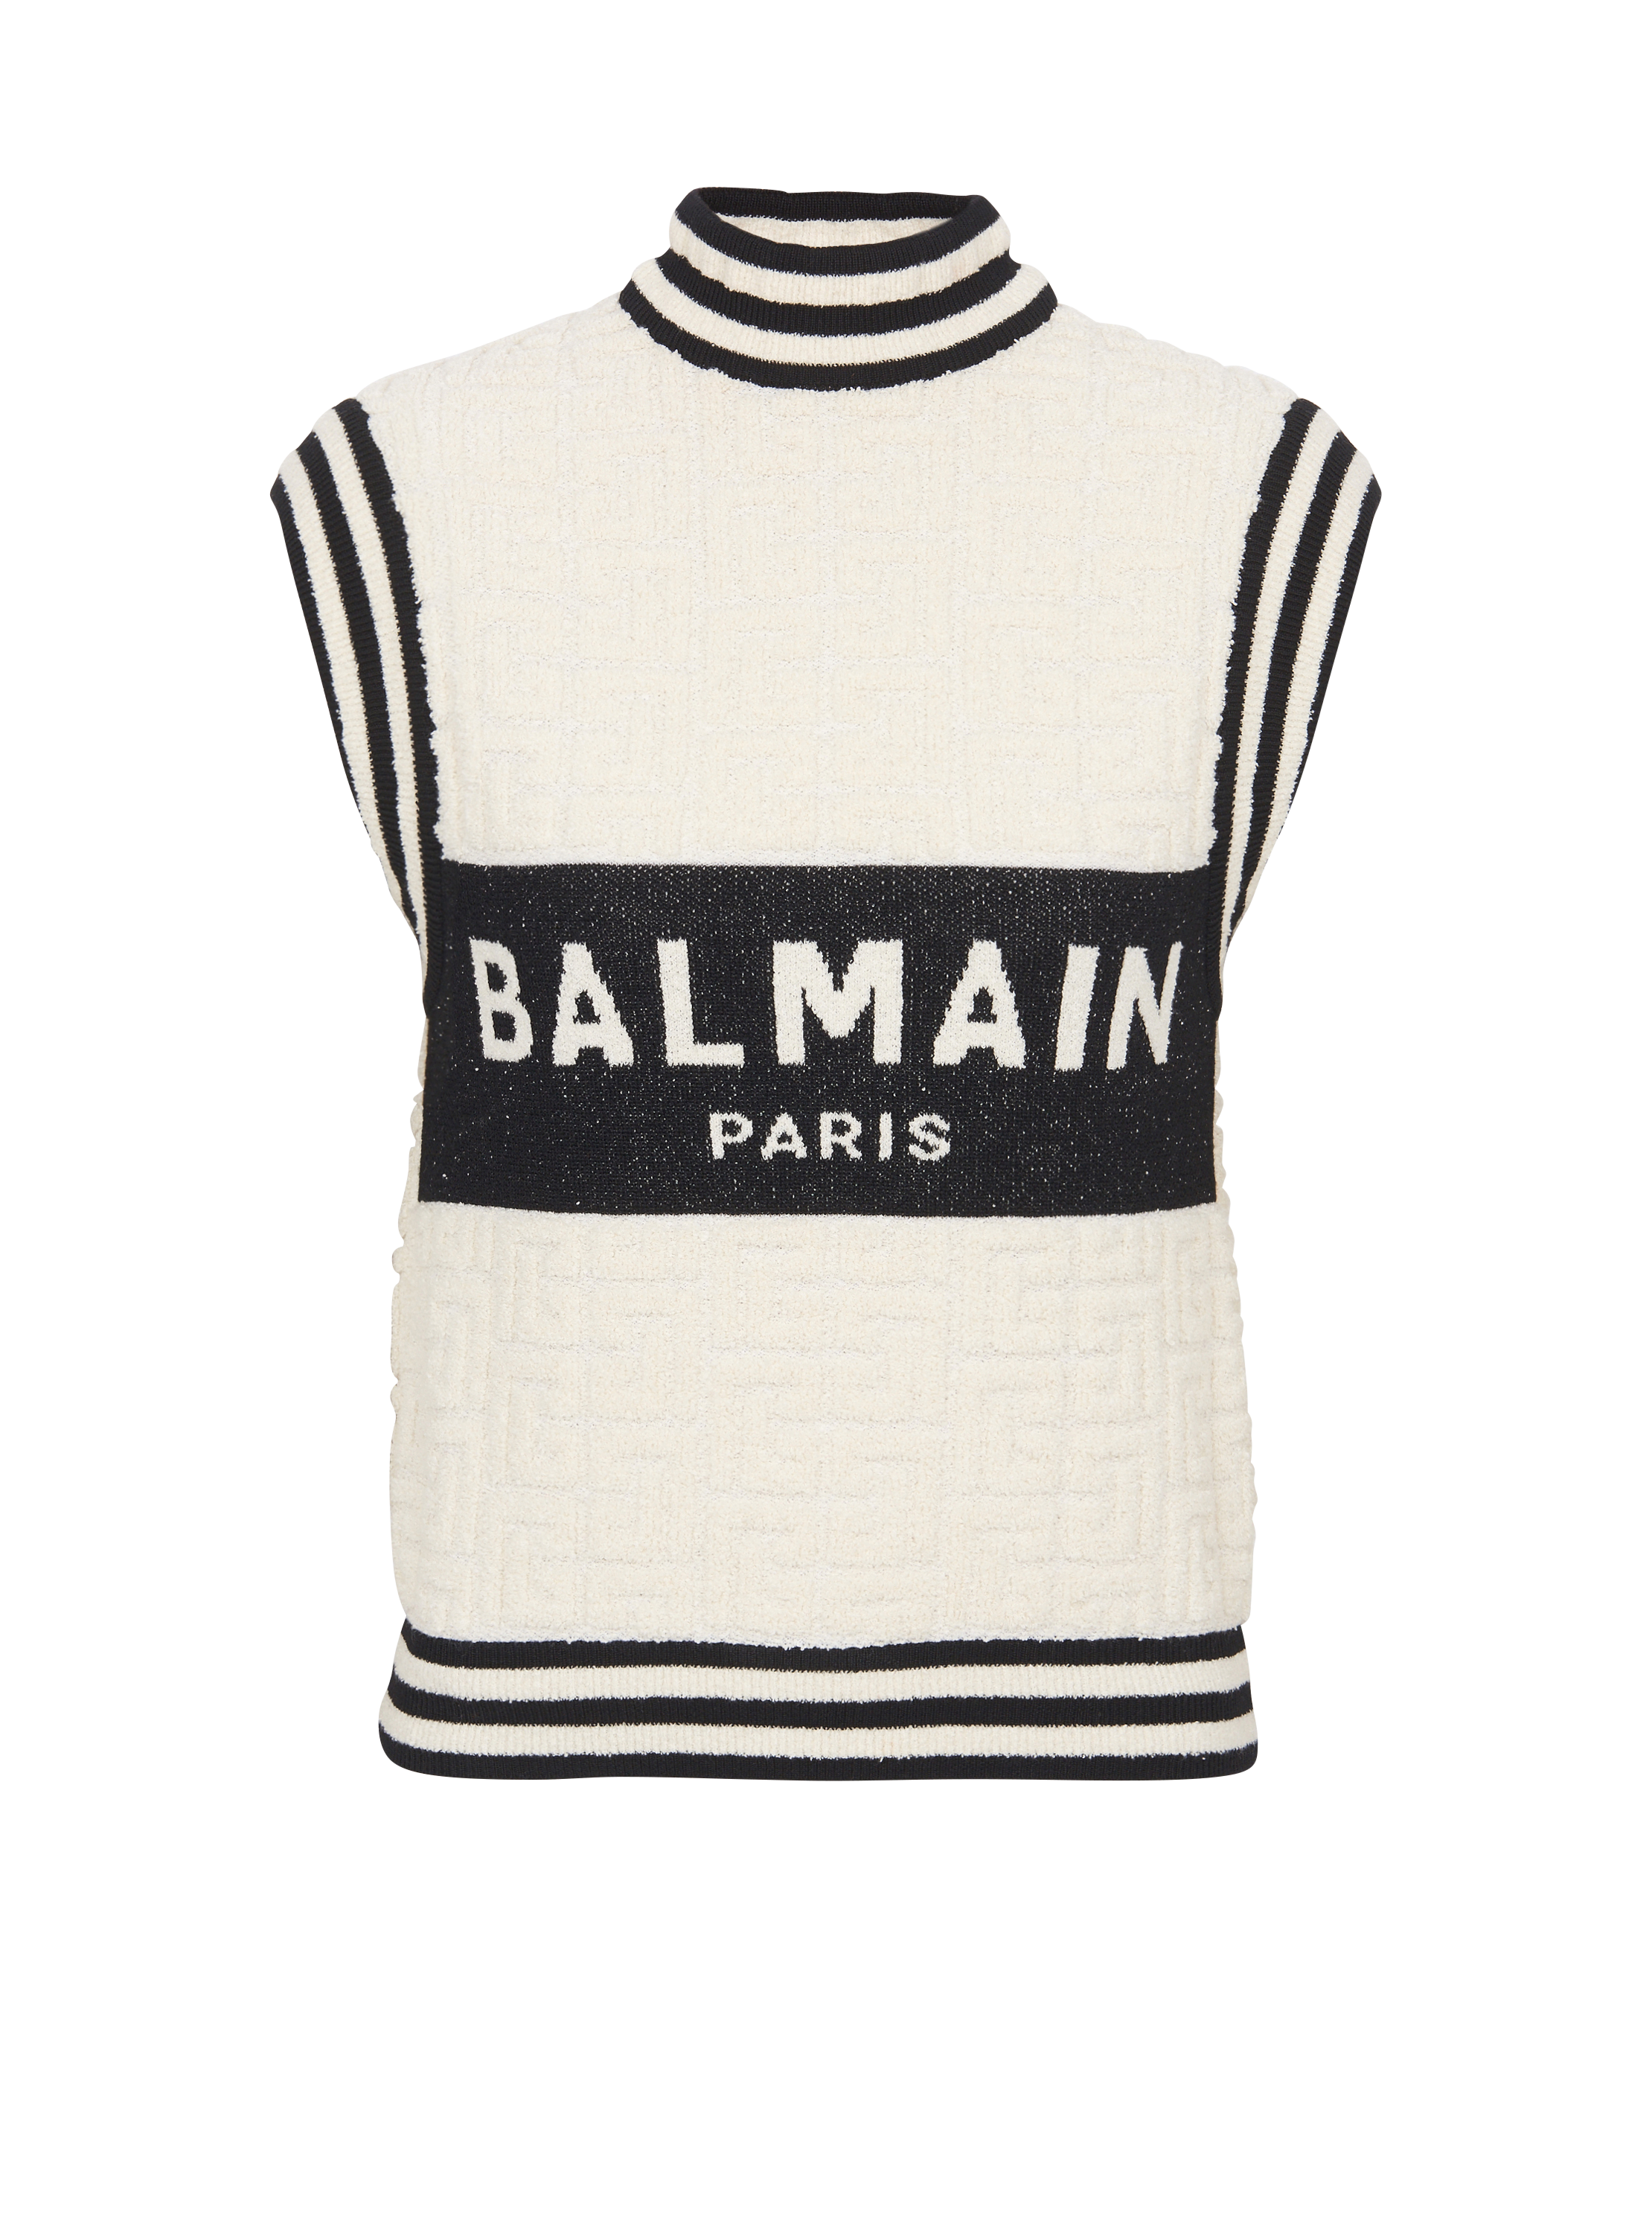 Top en maille bouclette Balmain monogramme, blanc, hi-res